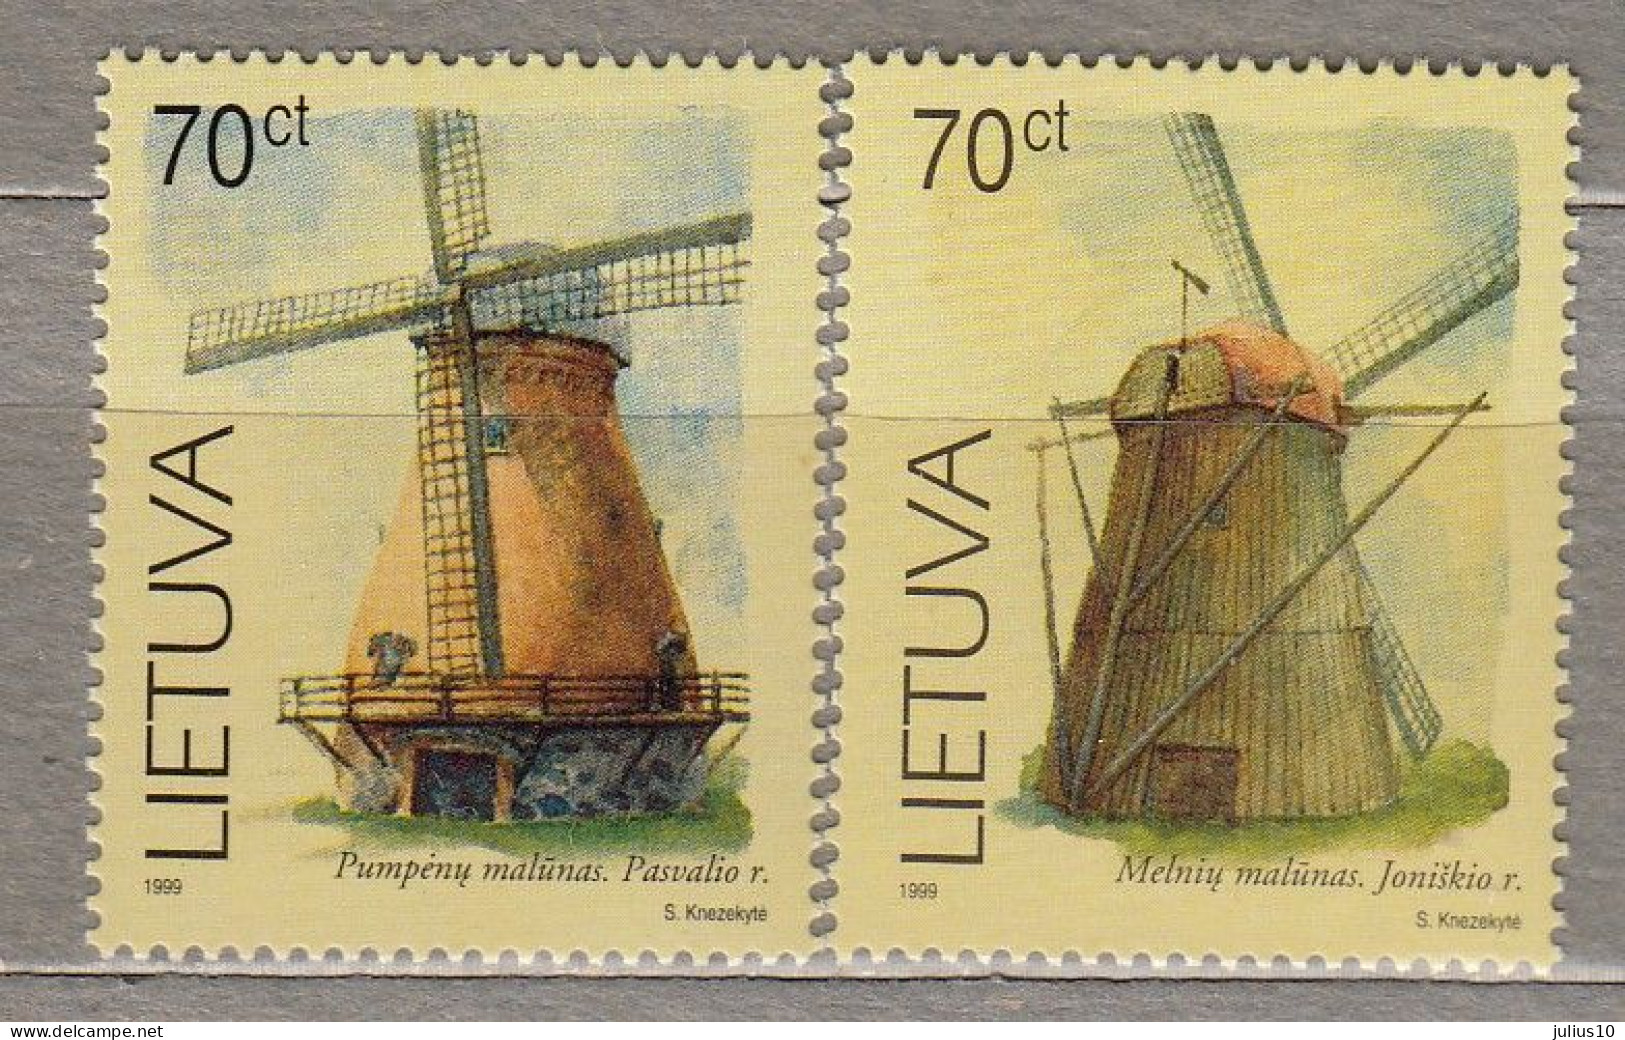 LITHUANIA 1999 Windmill MNH(**) Mi 696-697 # Lt702 - Windmills